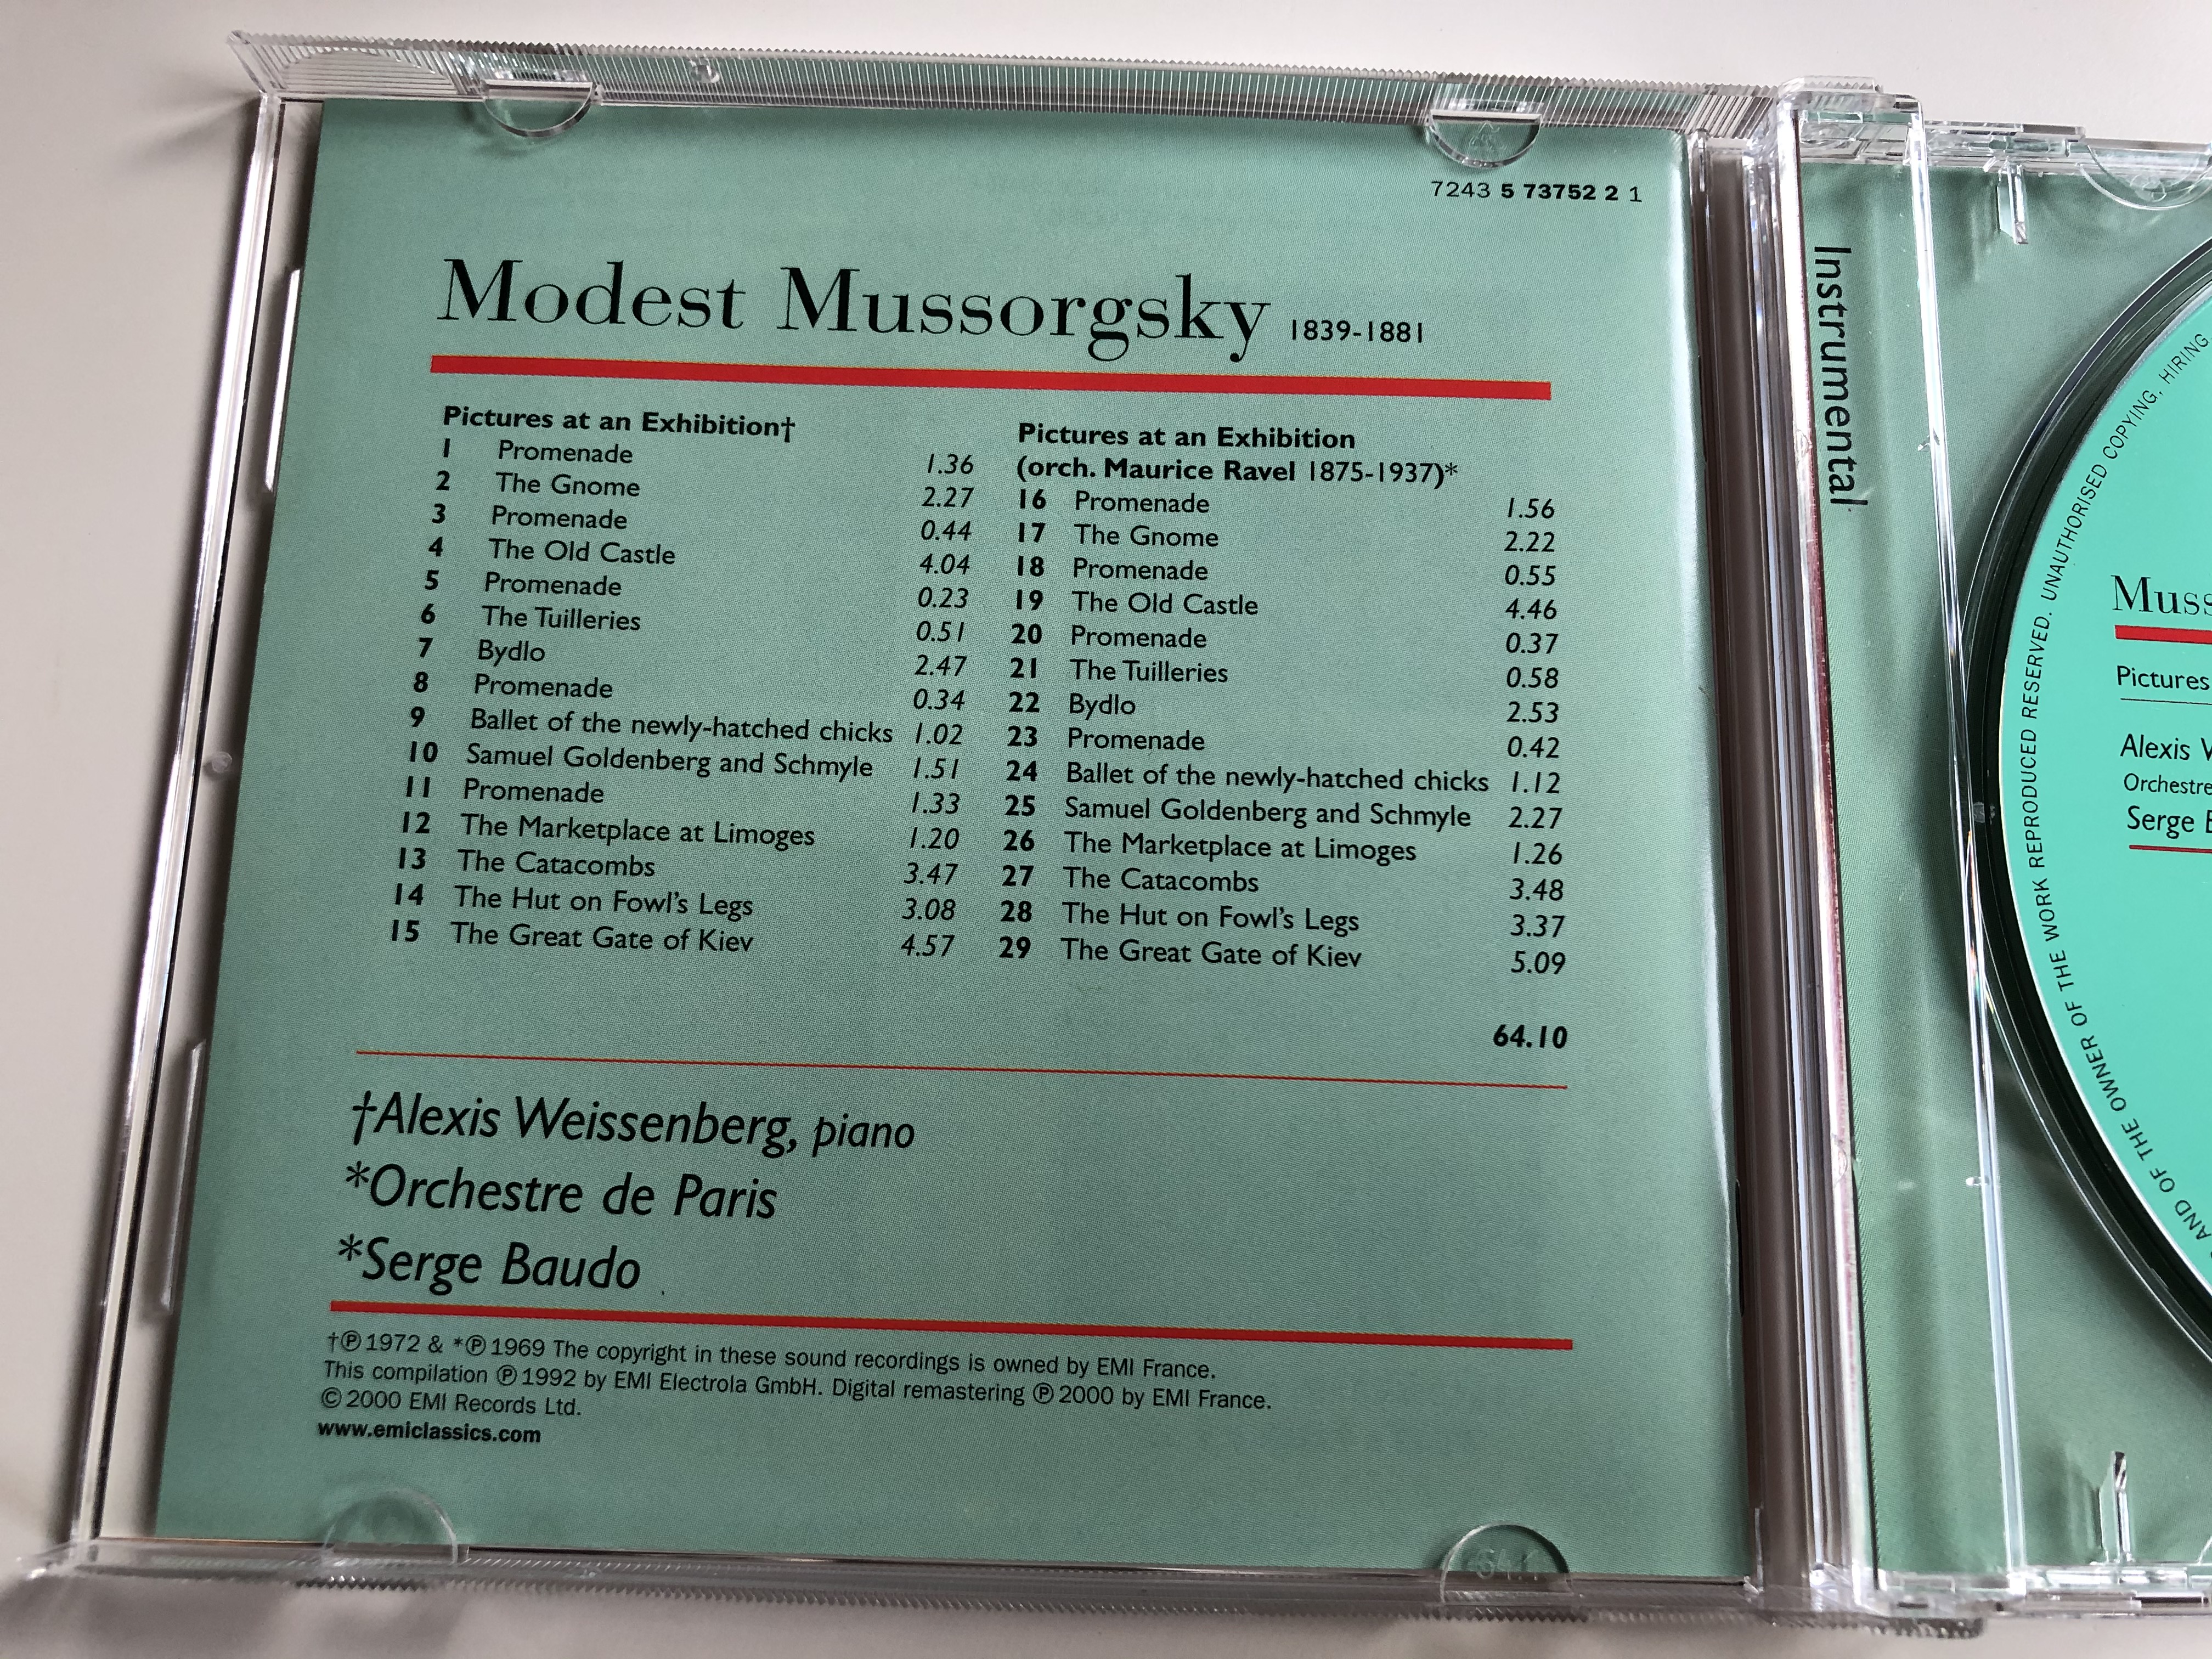 mussorgsky-pictures-at-an-exhibition-alexis-weissenberg-orchestre-de-paris-serge-baudo-emi-classics-audio-cd-7243-5-73752-2-1-4-.jpg